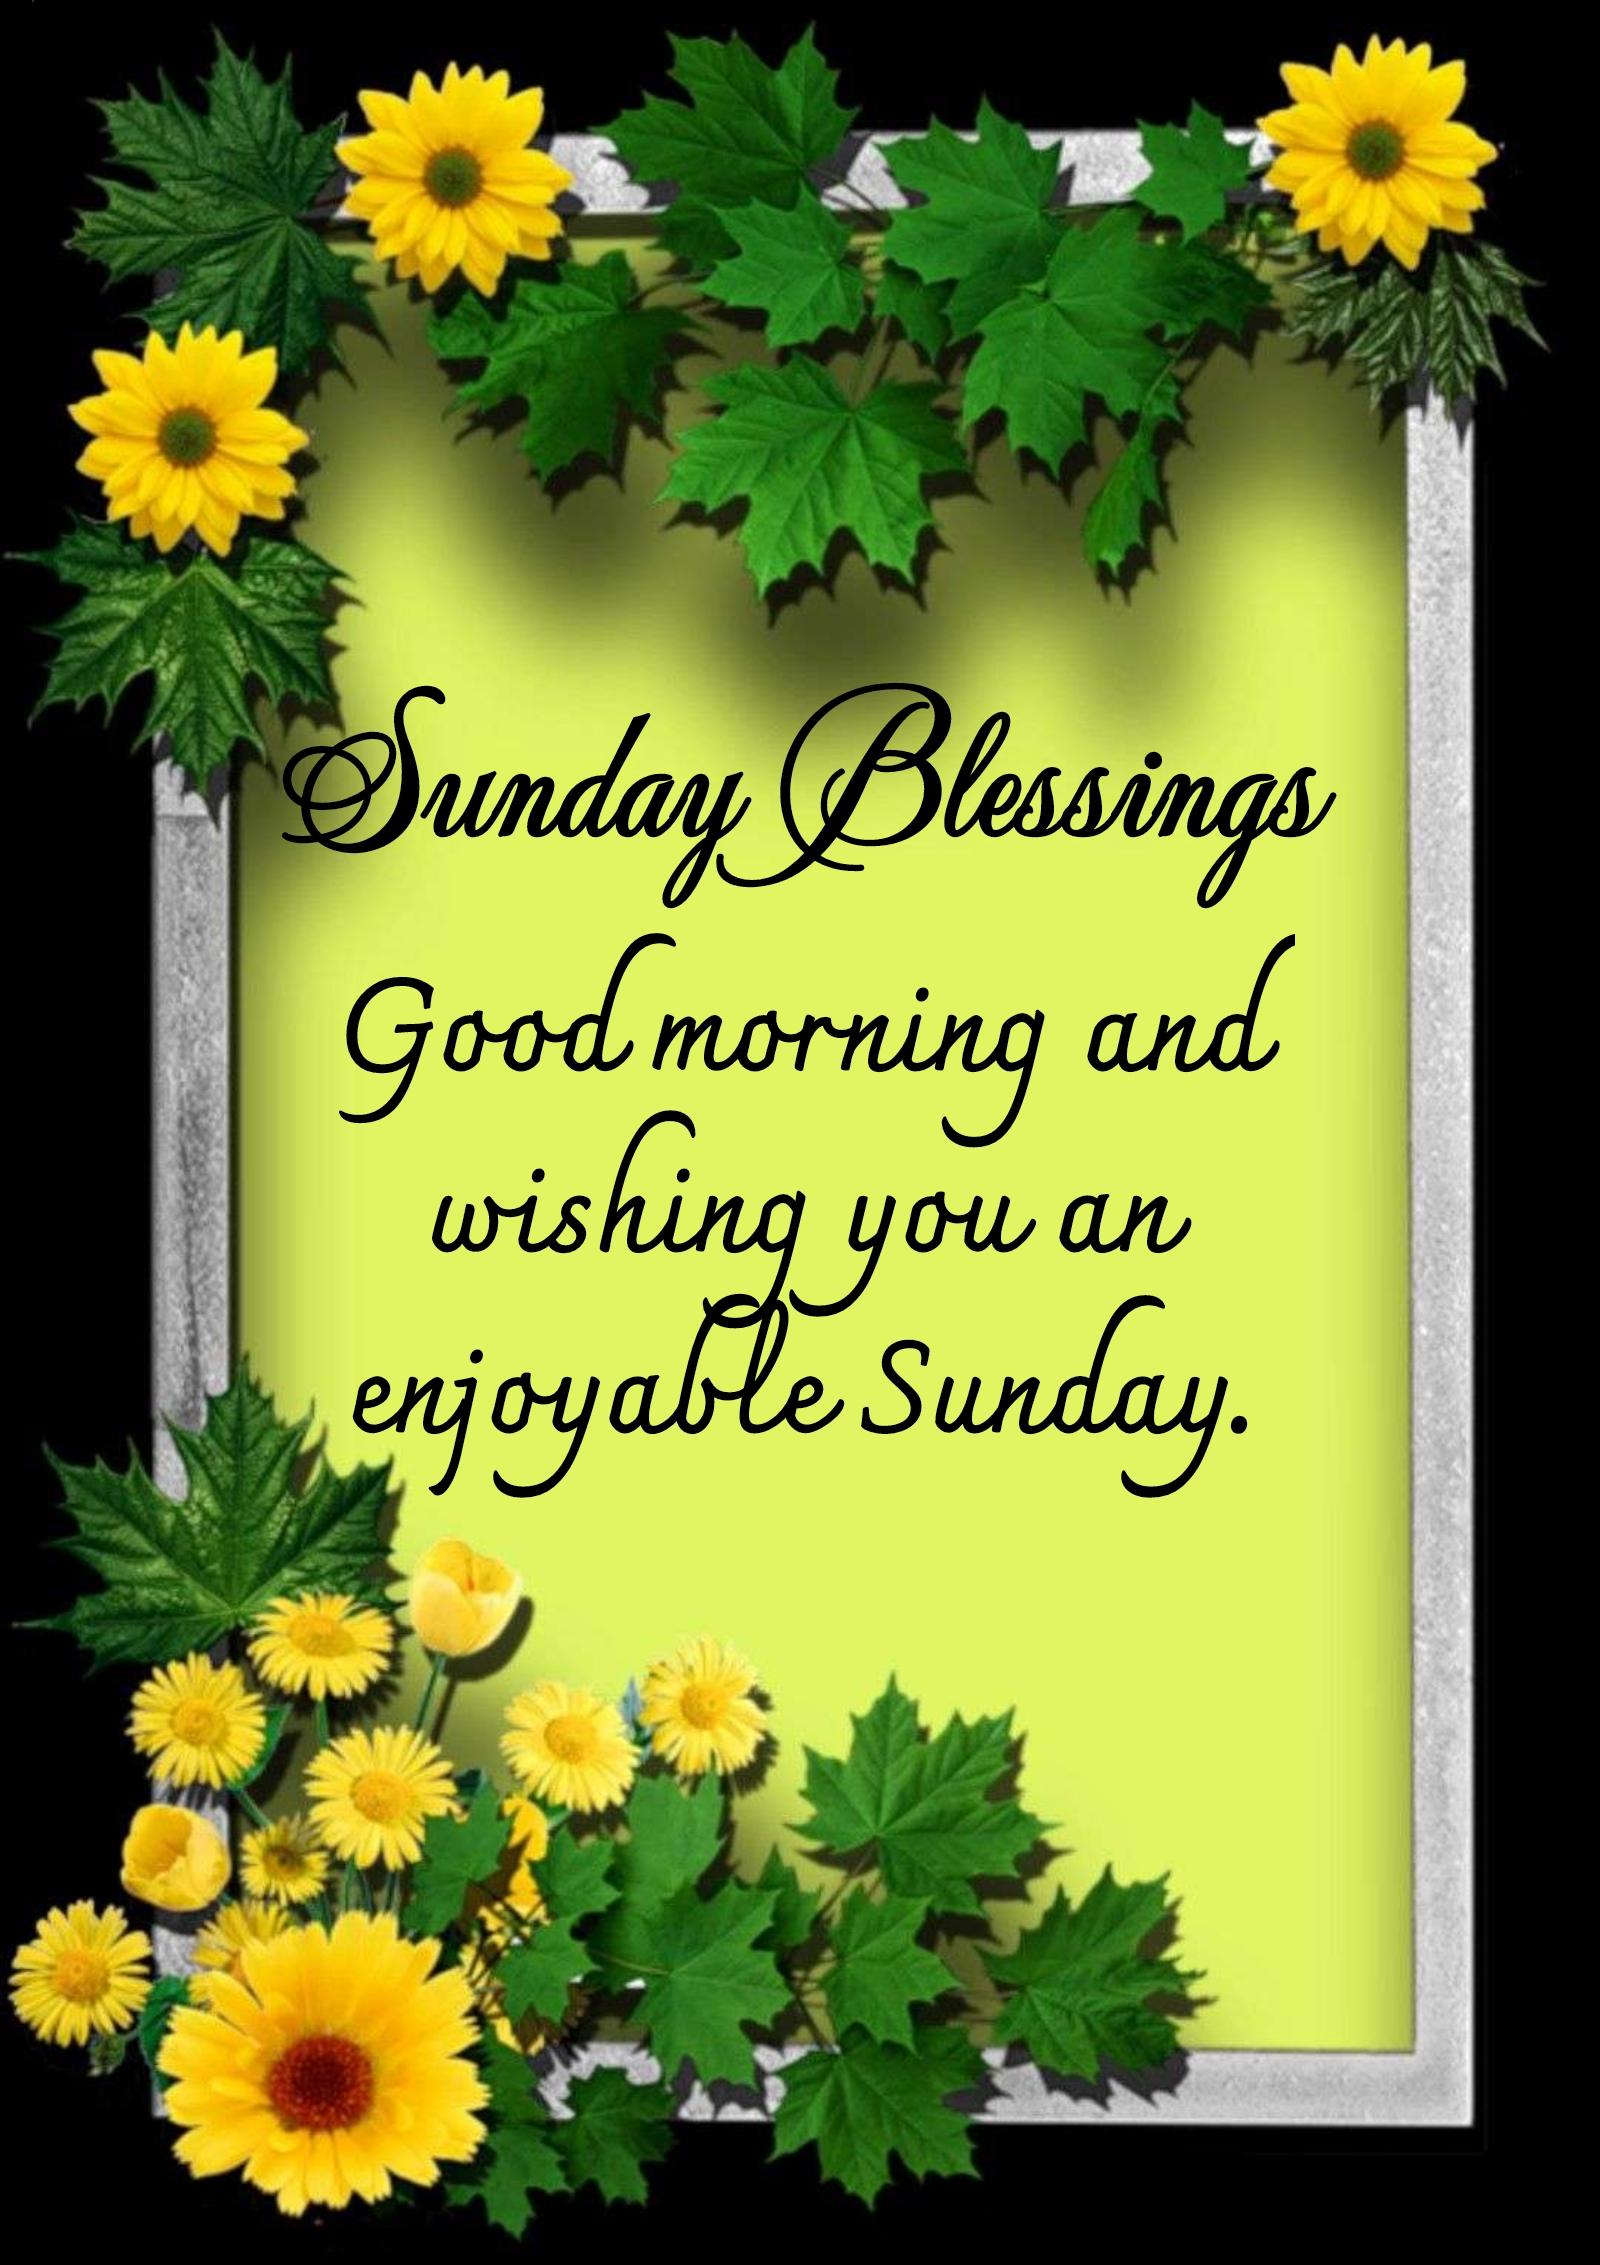 Good morning and wishing you an enjoyable Sunday